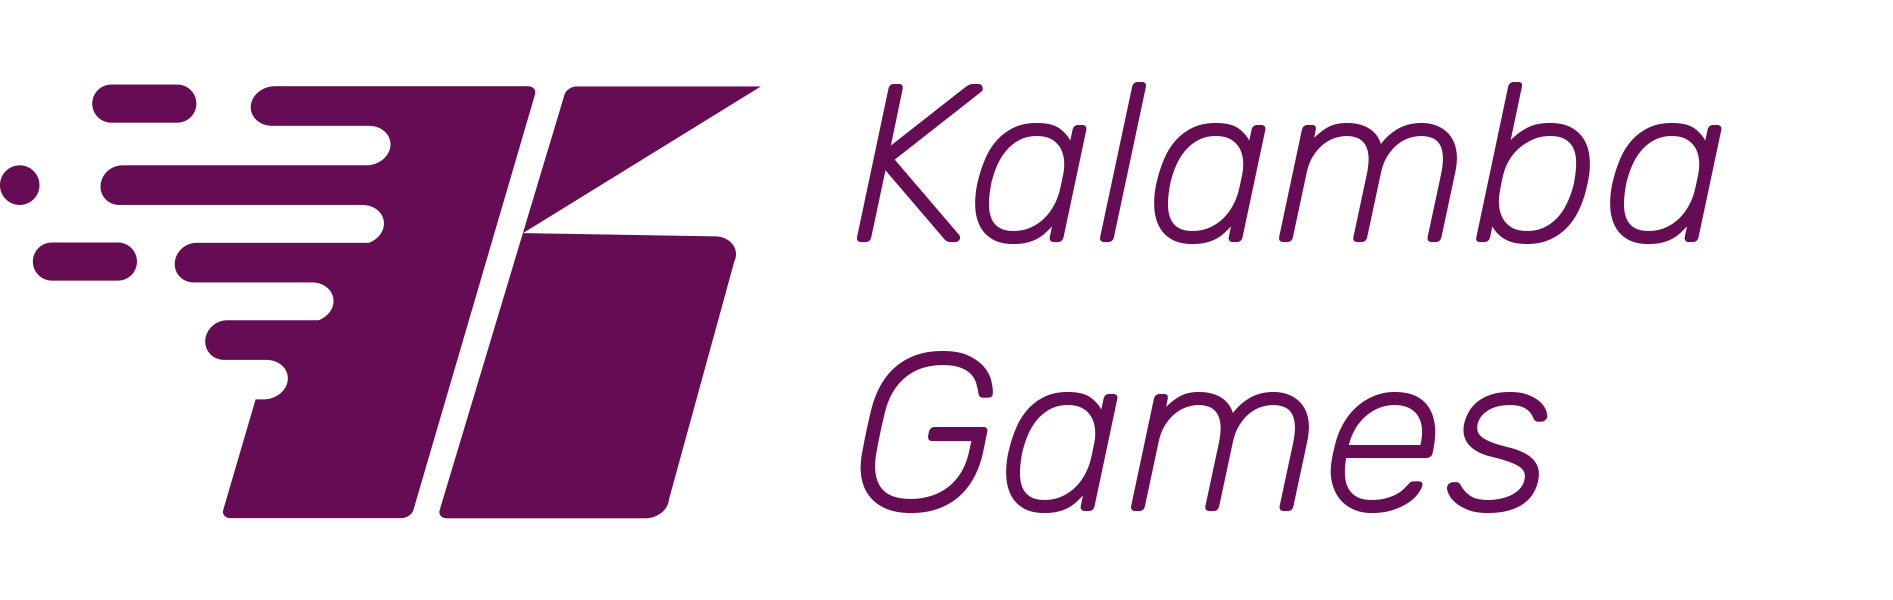 kalamba logo